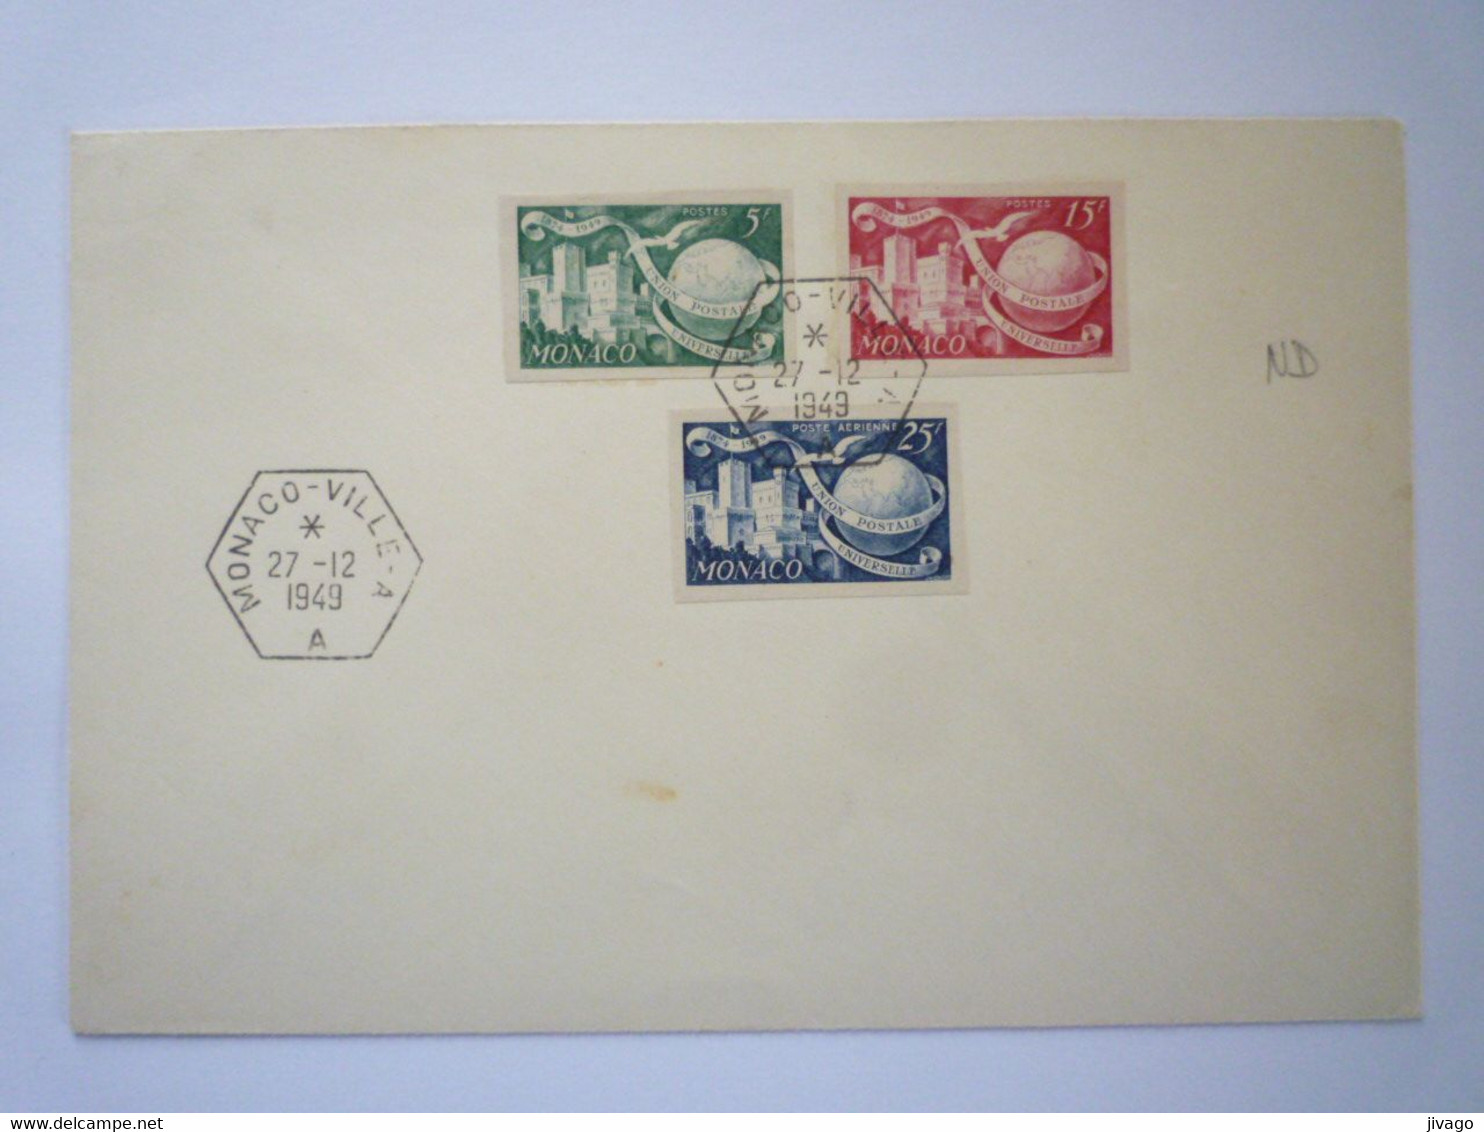 22 - M 4162  Enveloppe Au Départ De MONACO - VILLE - A   (Timbres Non Dentelés)  1949   XXX - Brieven En Documenten